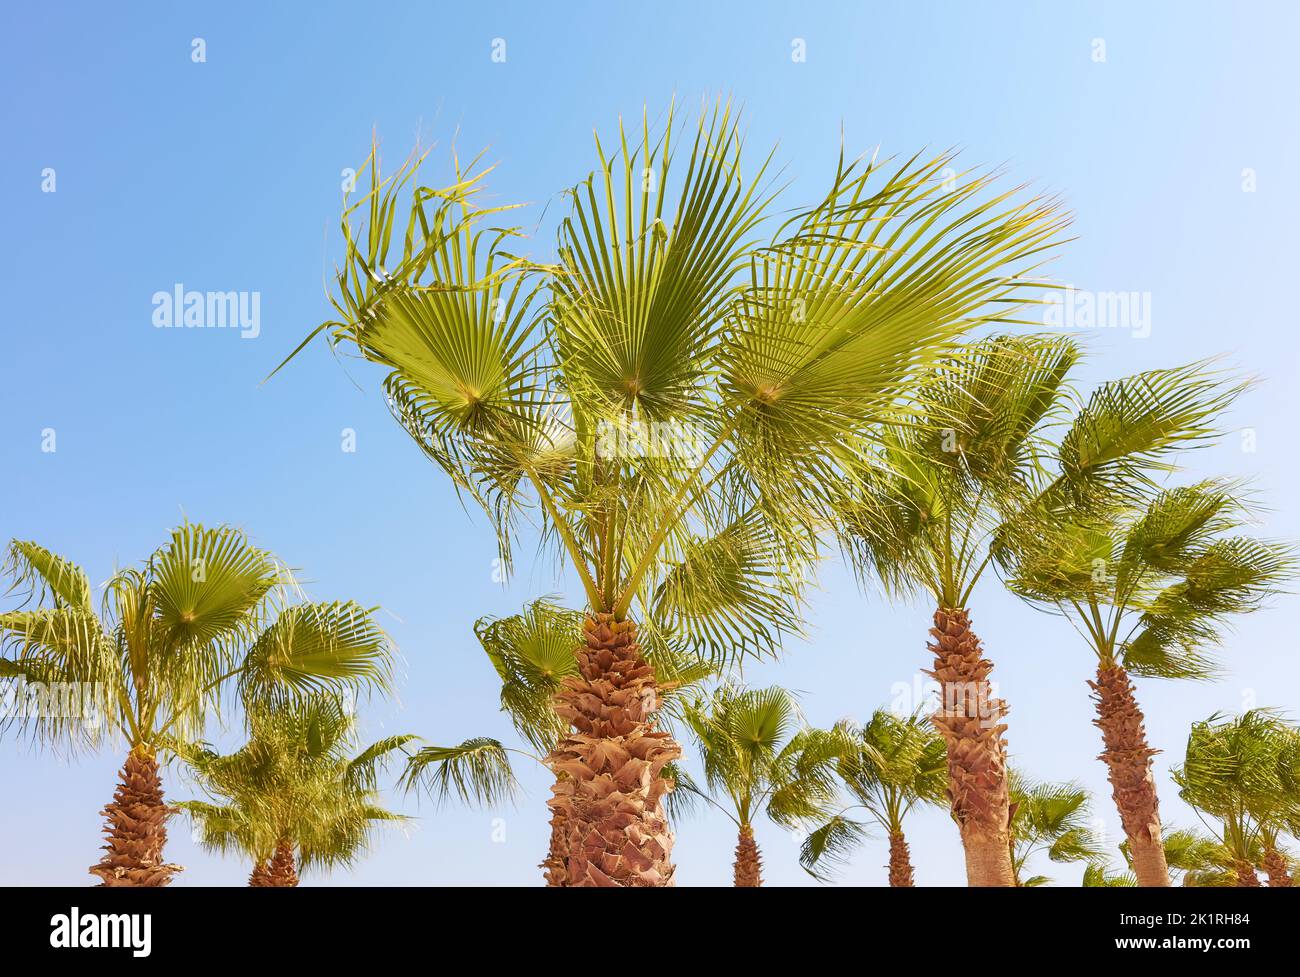 Alberi di palma in una giornata di sole, concetto di vacanza tropicale. Foto Stock